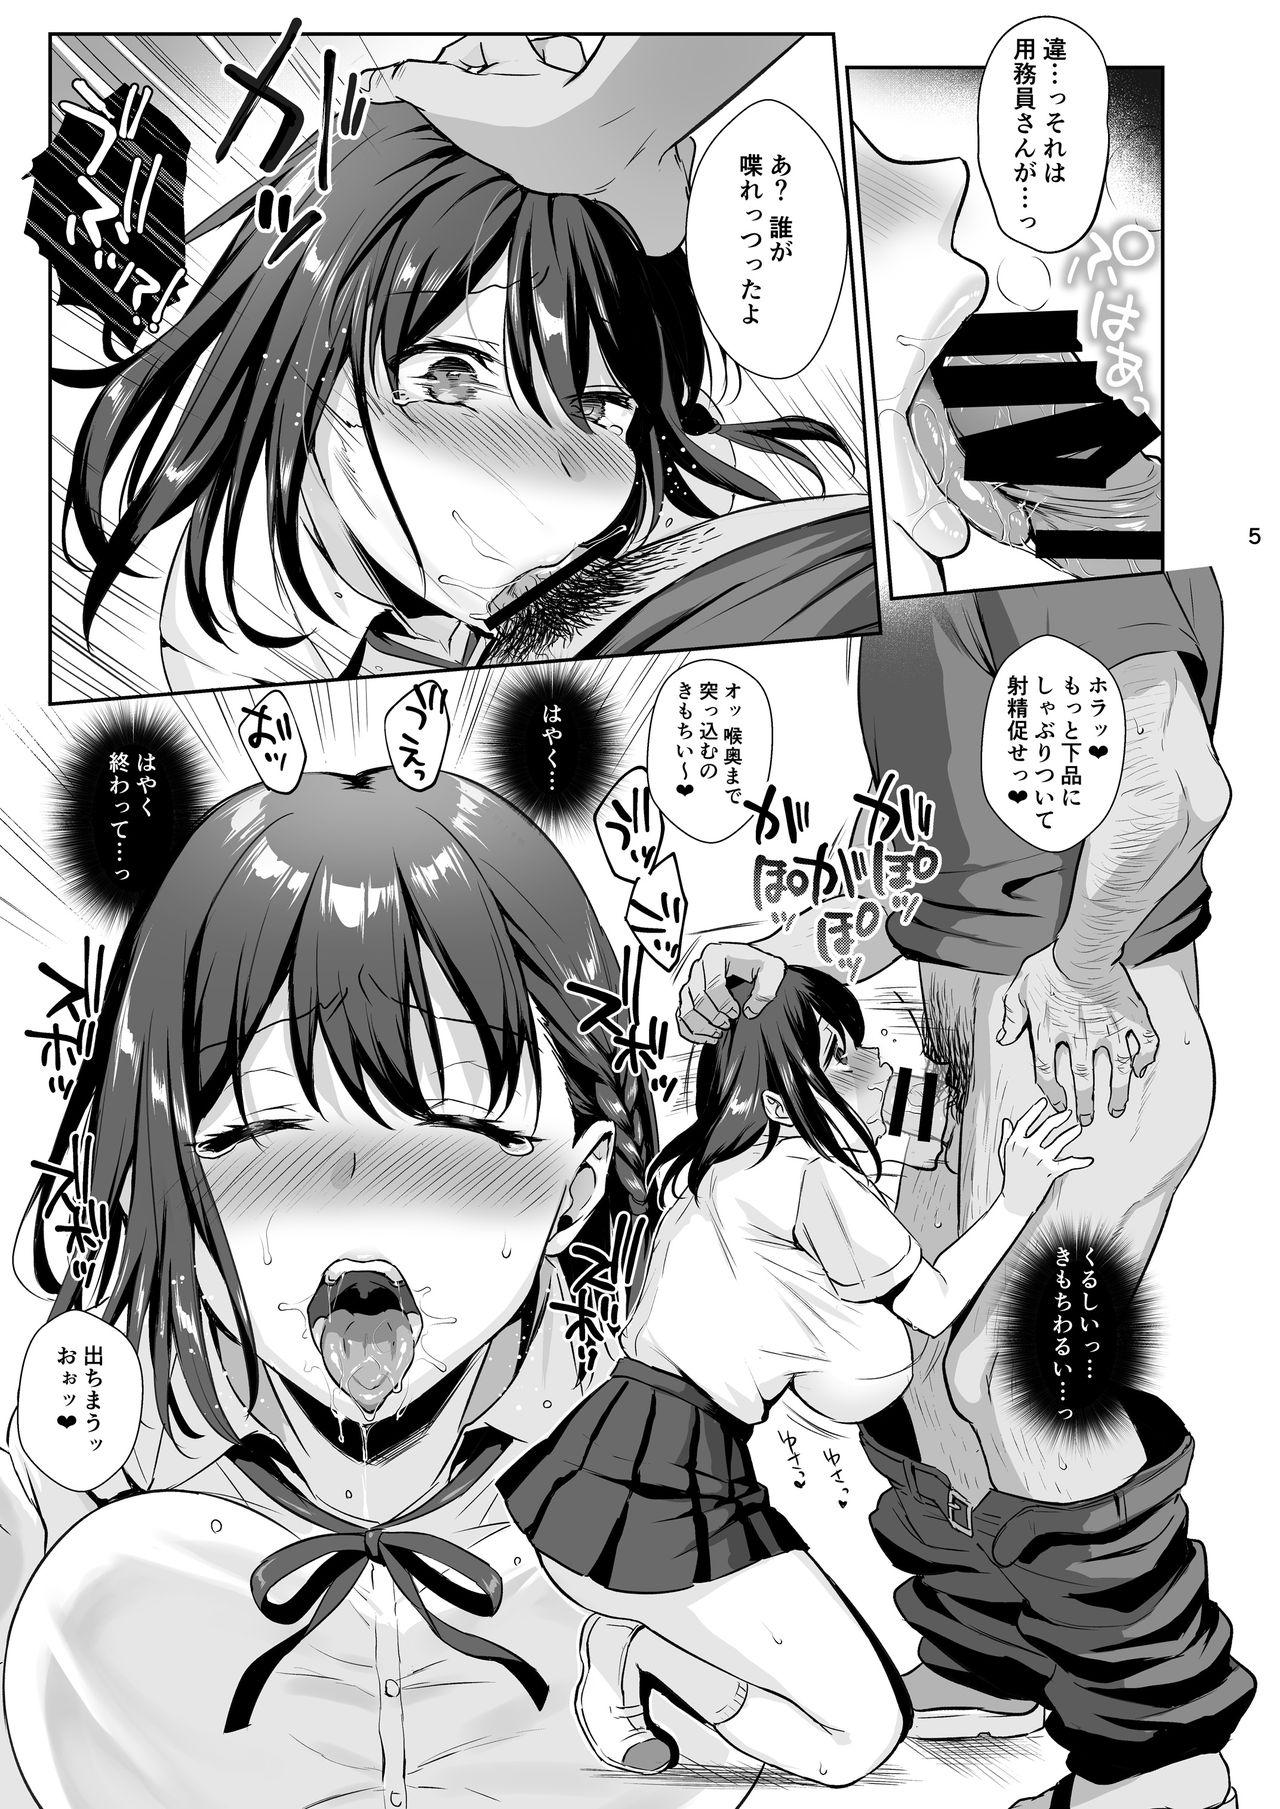 Crazy Toshoshitsu no Kanojo 2 - Original Licking - Page 6